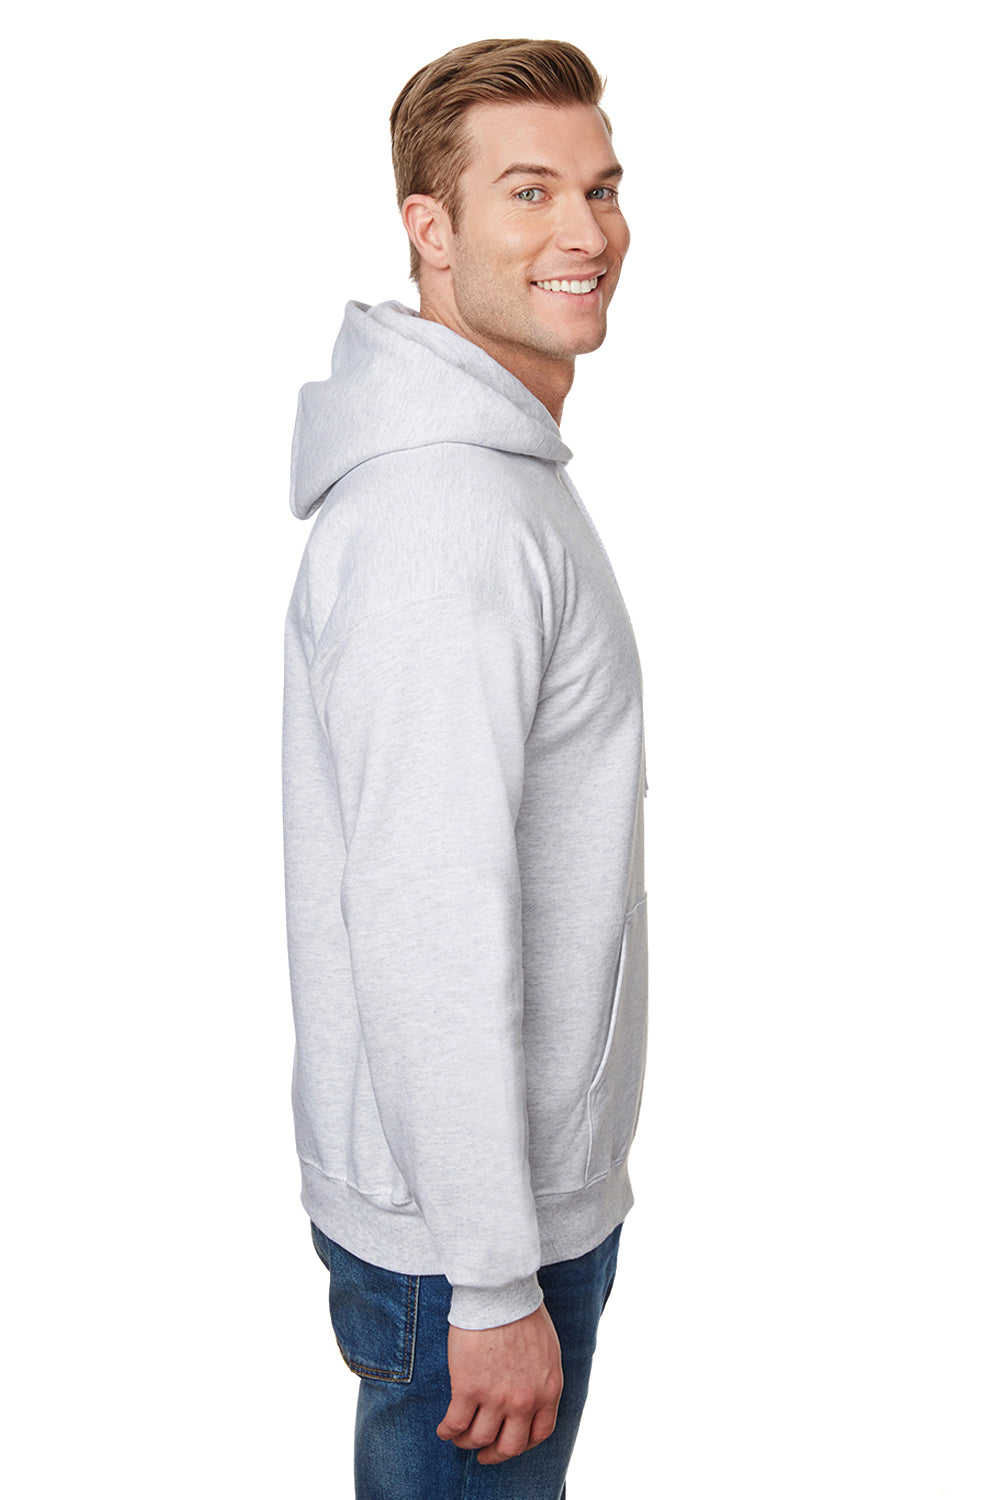 Hanes F170 Mens Ultimate Cotton PrintPro XP Hooded Sweatshirt Hoodie Ash Grey Side